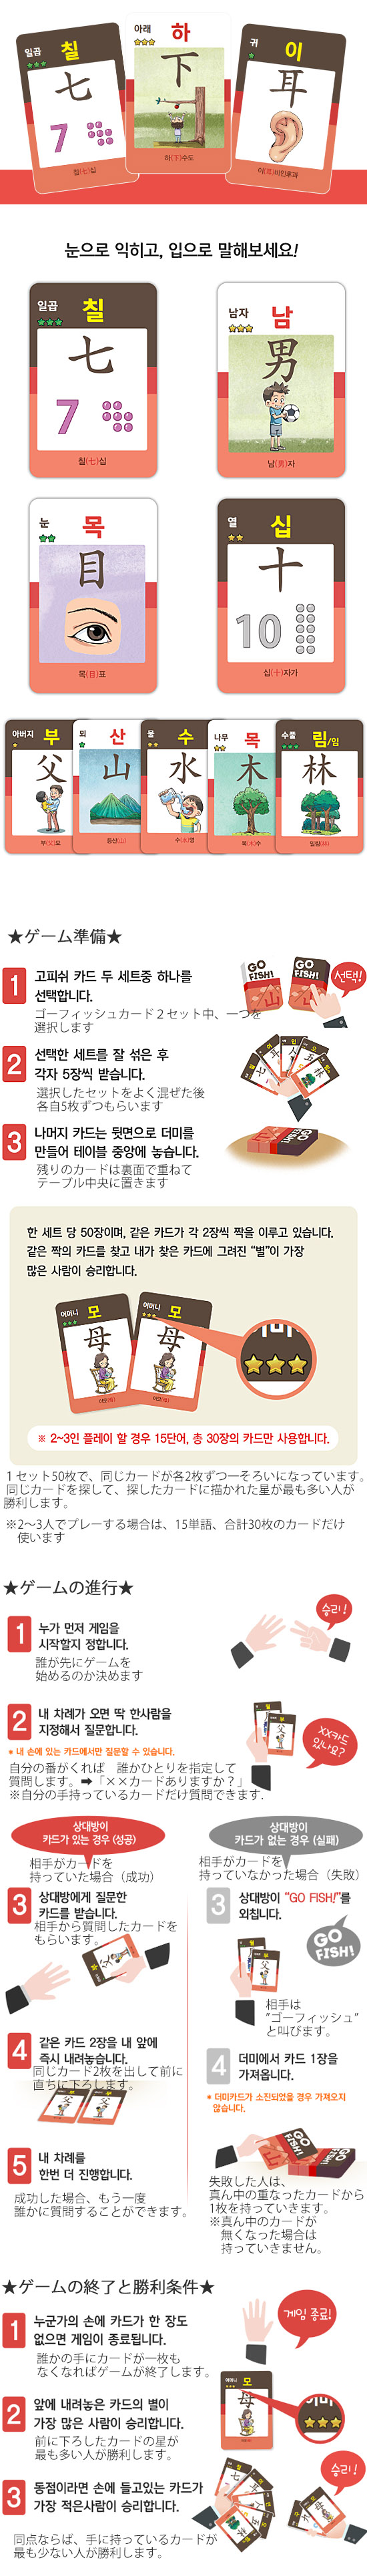 韓国語学習カードゲーム ゴーフィッシュ ハングル 漢字 8級 韓国情報広場